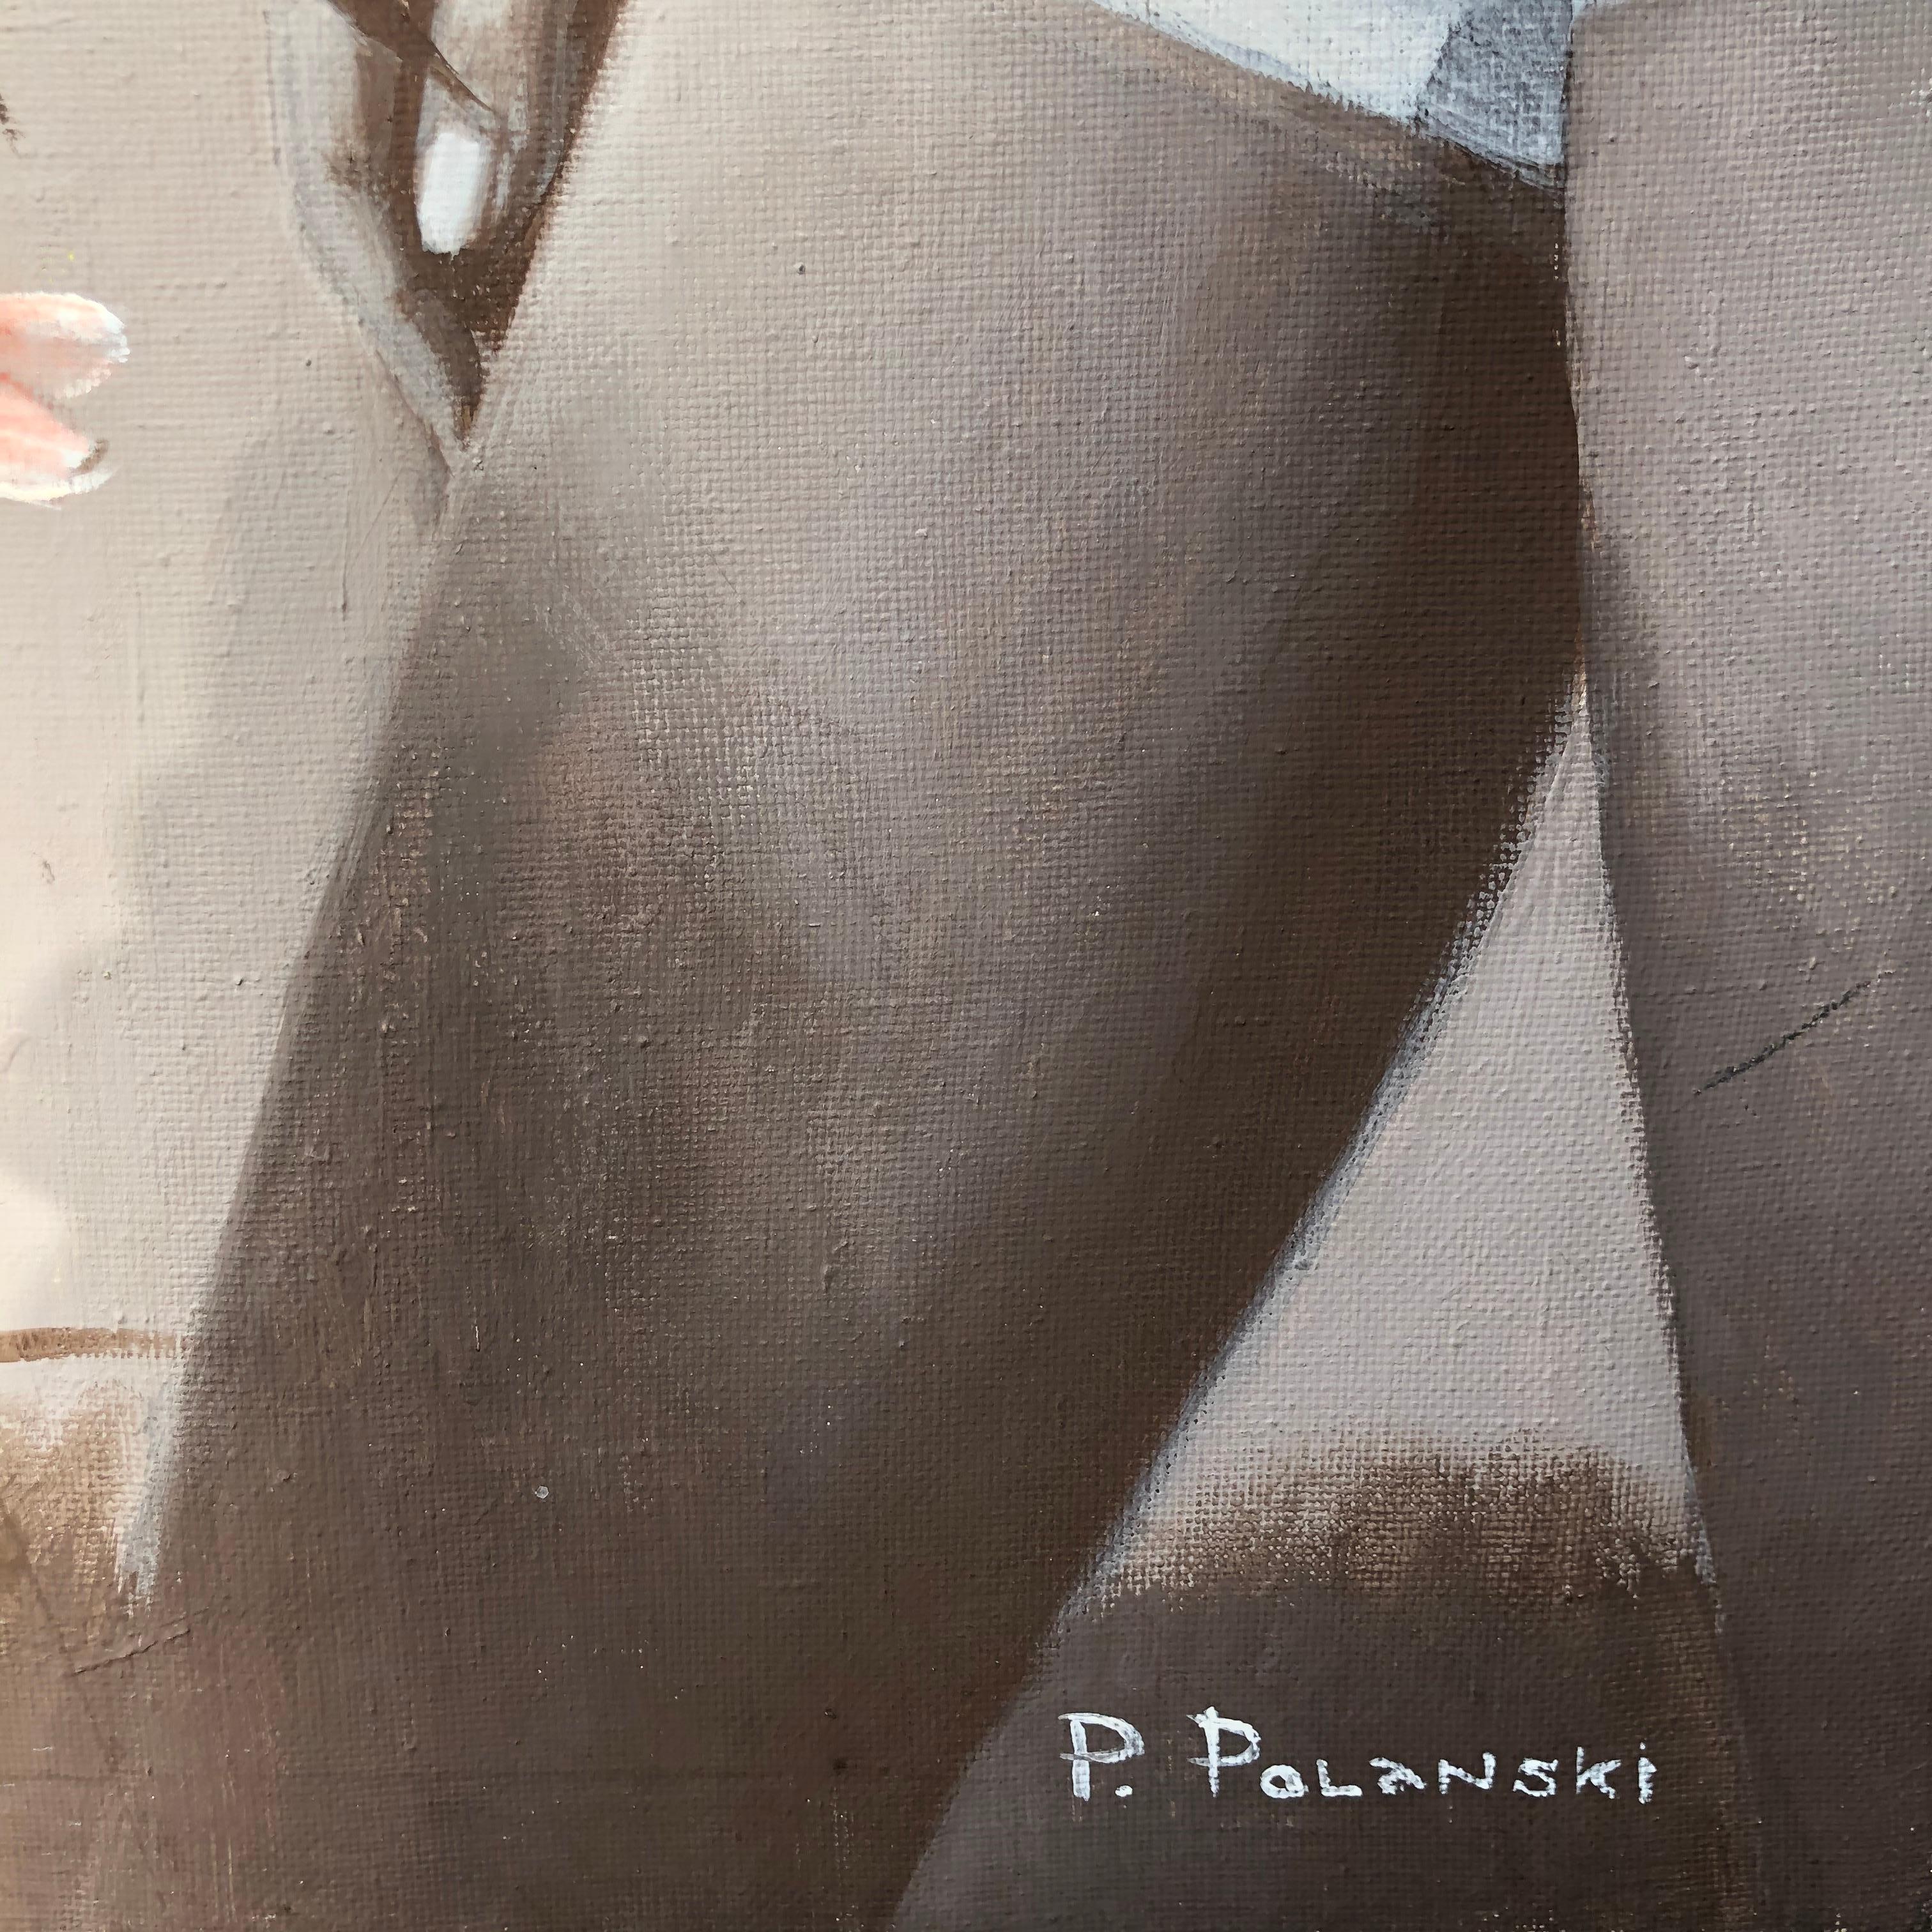 Fotografisch genauer Realismus und Konzeptualismus koexistieren friedlich auf den Leinwänden von Pavel Polanski.
Seine Leinwände sind grau mit unterschiedlichen Farbtiefen, fast monochrom, und das verleiht seinen Bildern Tiefe und Poesie.

Der